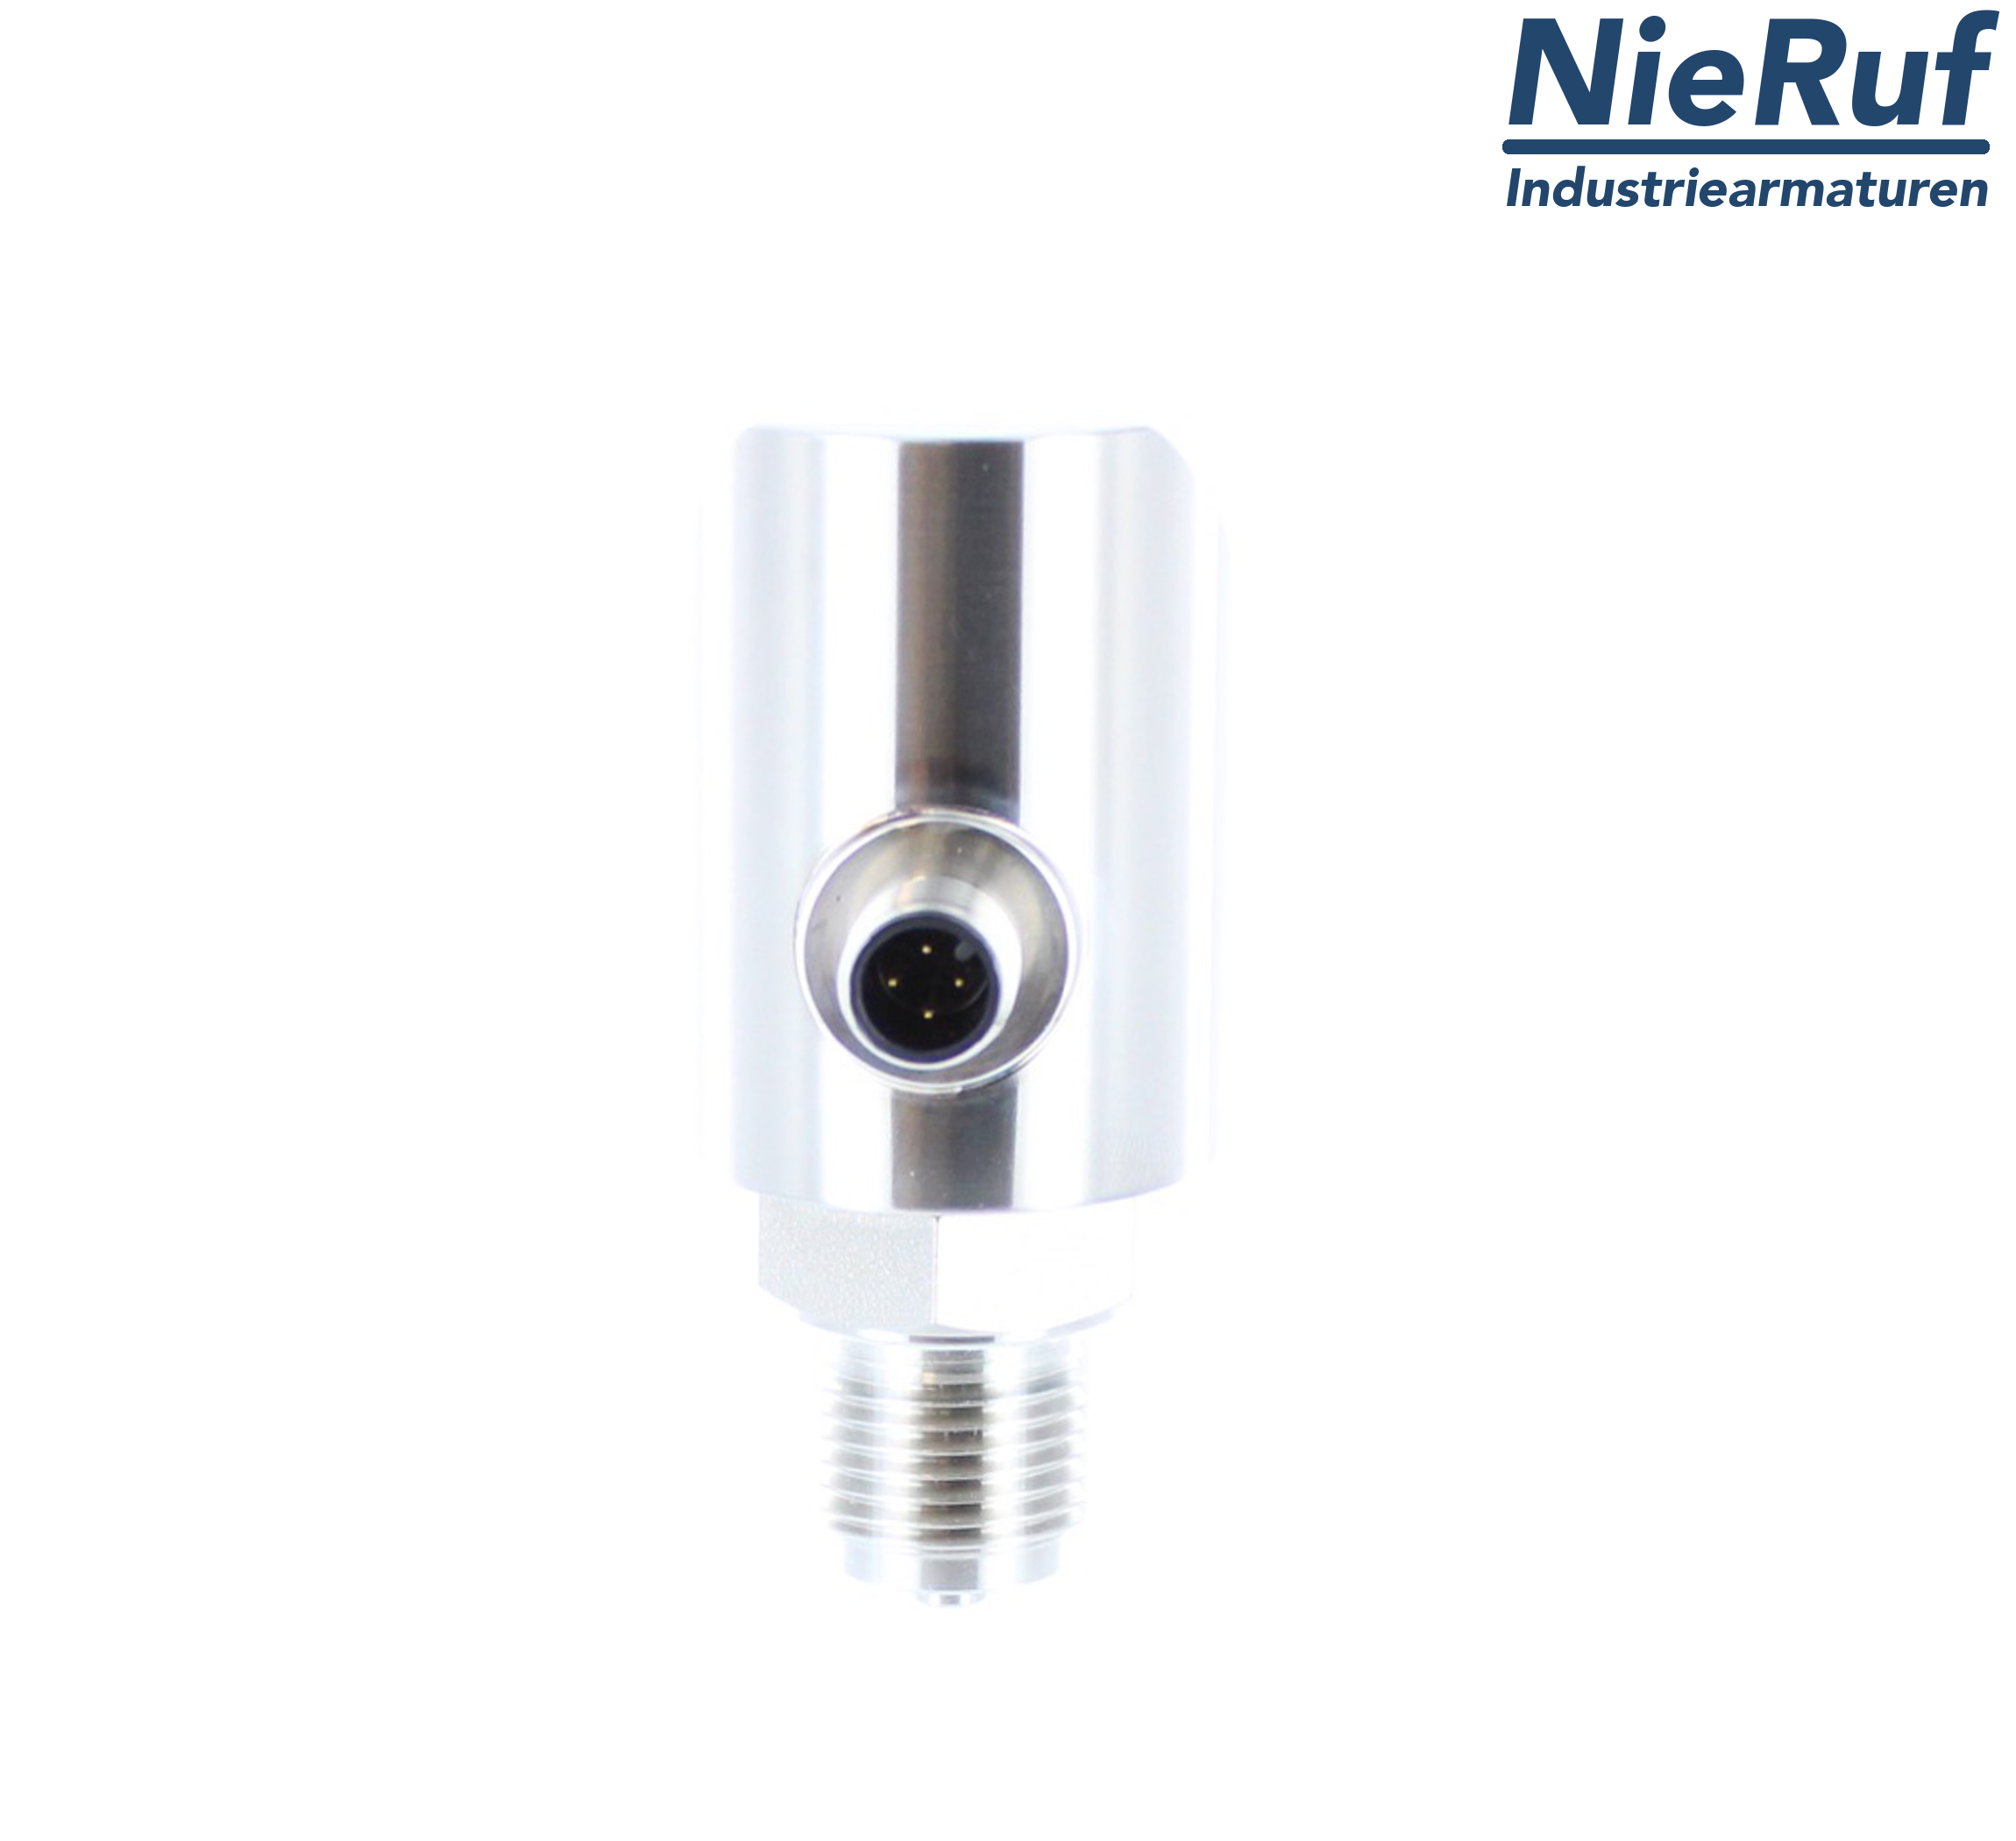 digital pressure sensor G 1/4" B 5-wire: 2xPNP, 1x4 - 20mA FPM 0,0 - 4,0 bar